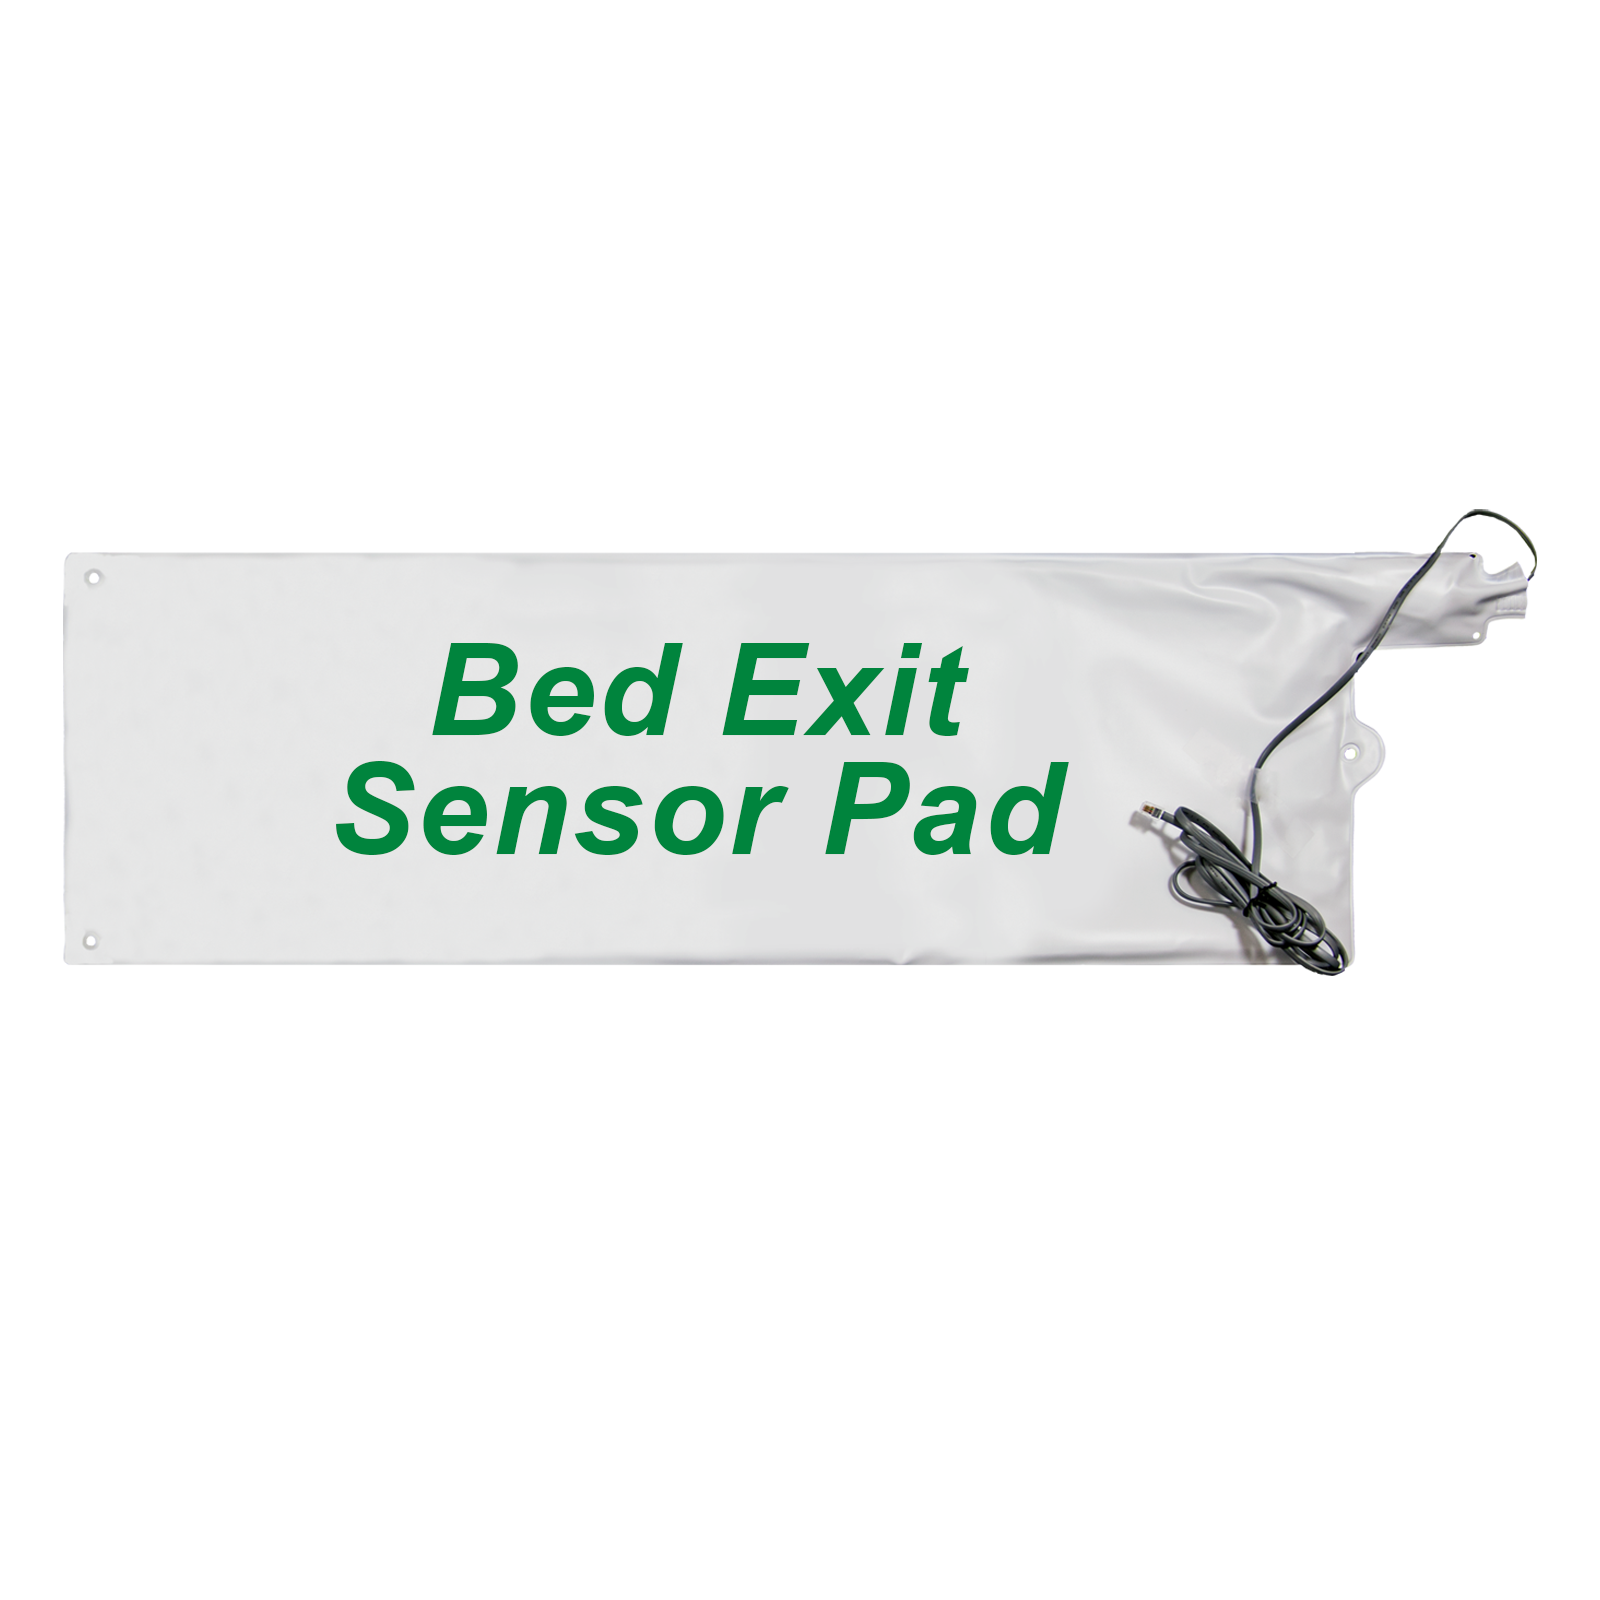 Bed_Exit_Sensor_Pad.png